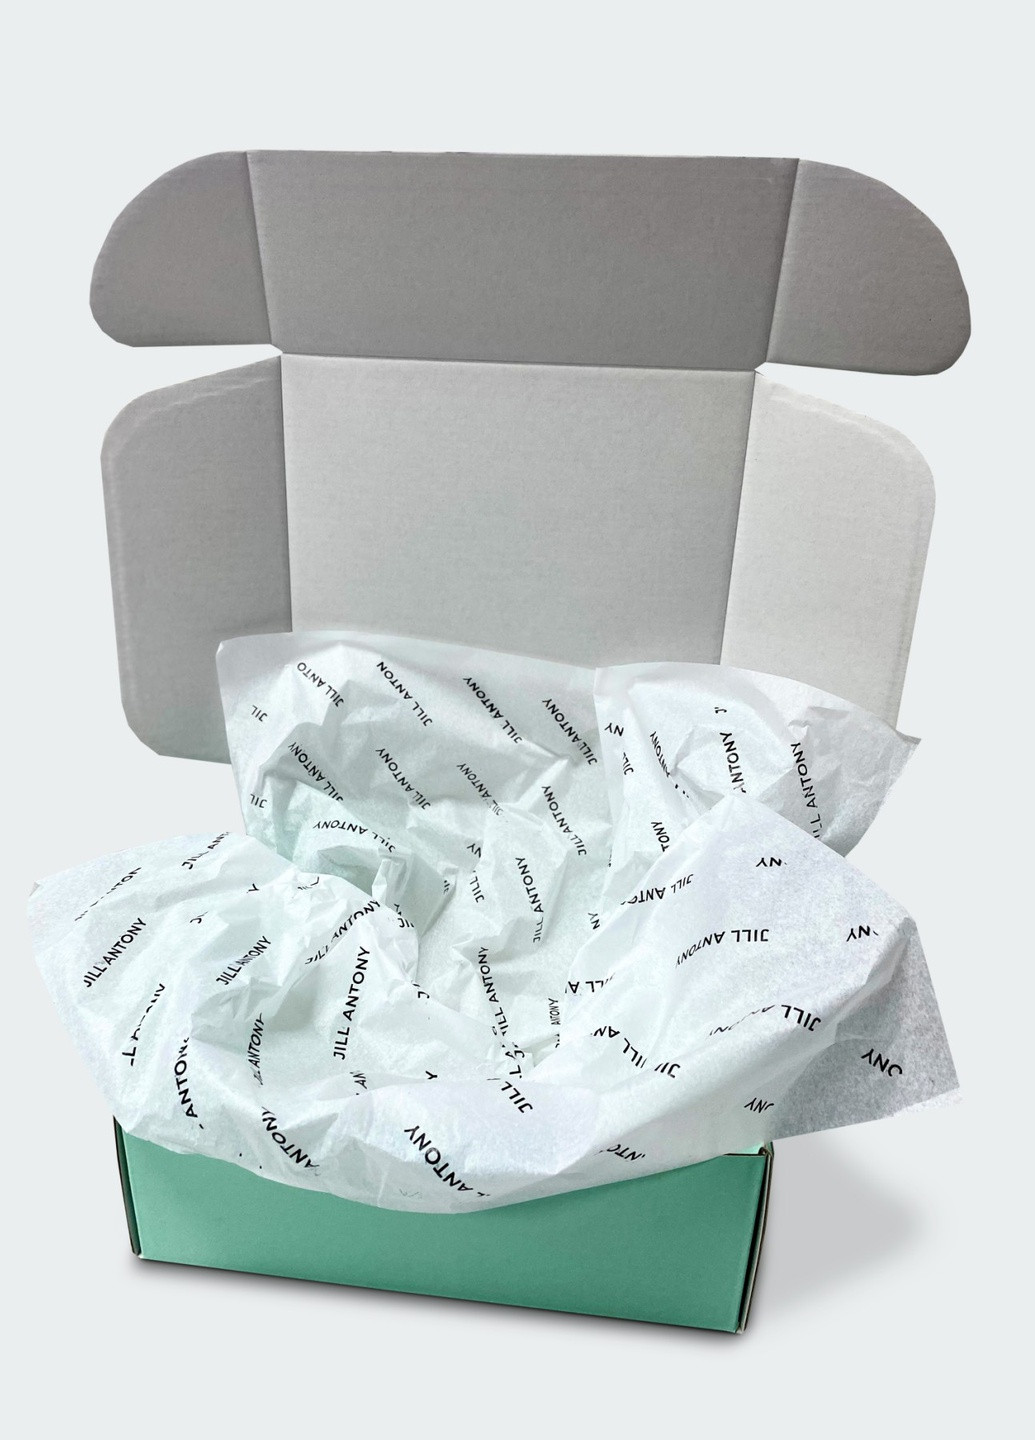 Носки в коробке набор 6 пар высокие бесшовные дышащие качественные ORGANIC cotton красивая коробка 42-43 JILL ANTONY (258614256)